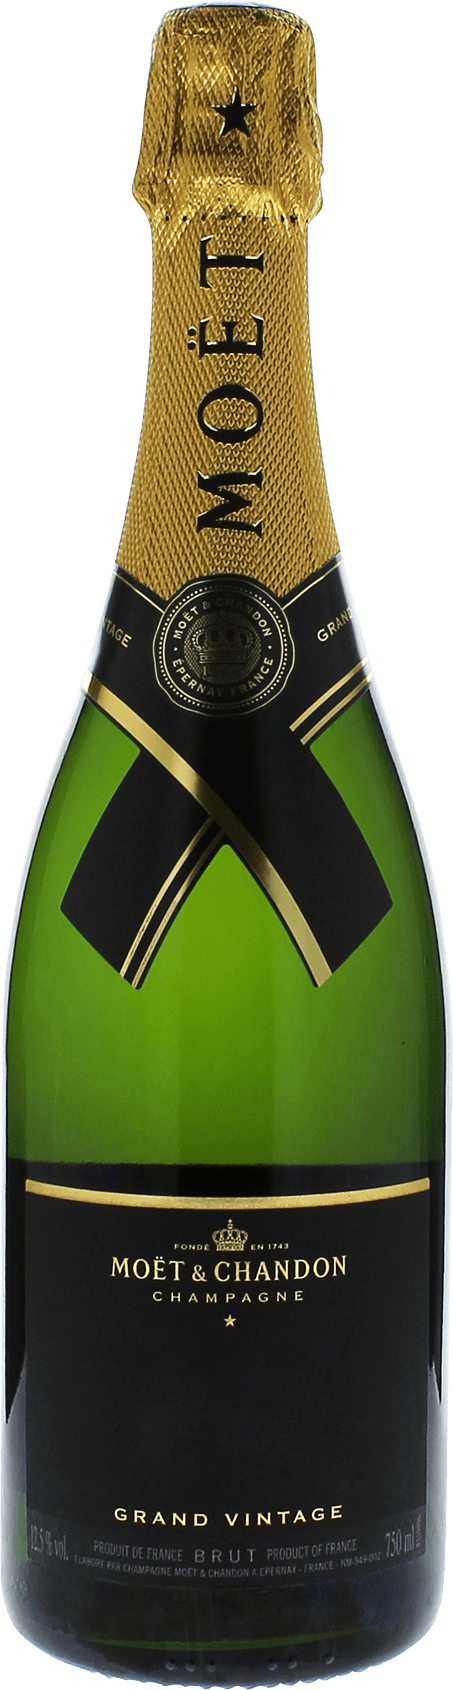 Mot et chandon grand vintage 2009  Moet et chandon, Champagne